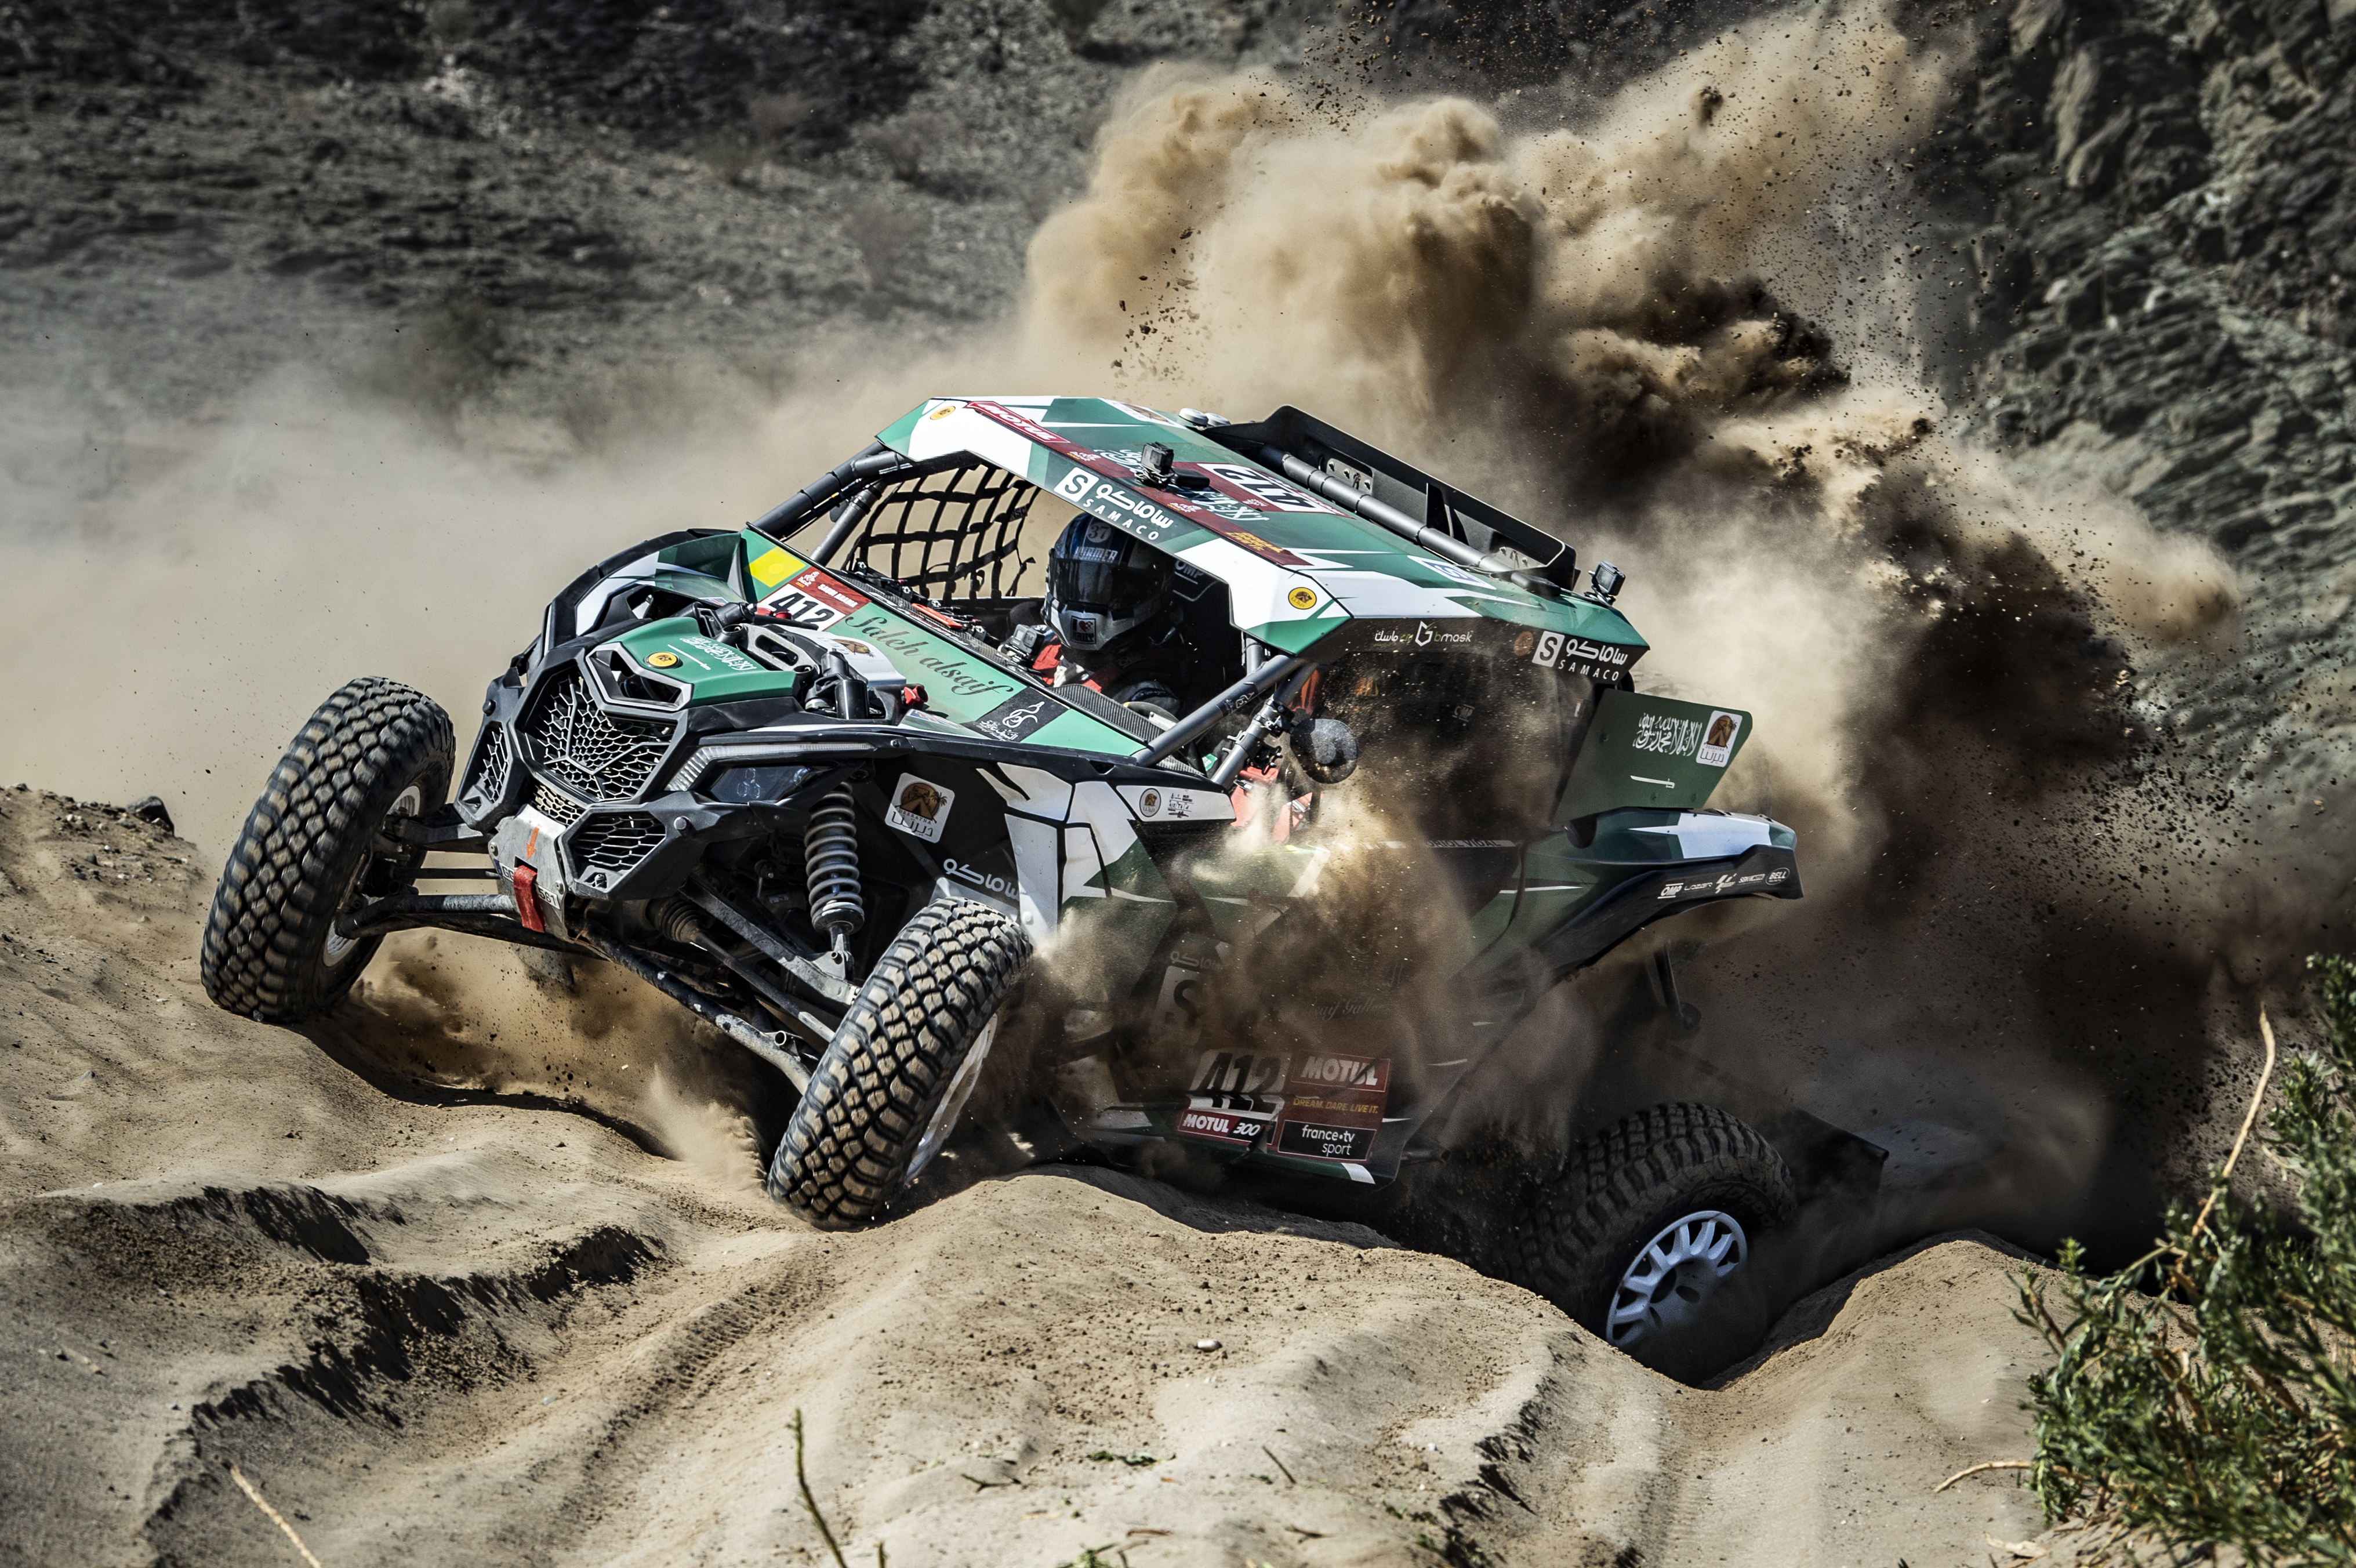 Dakar Rally Explosion